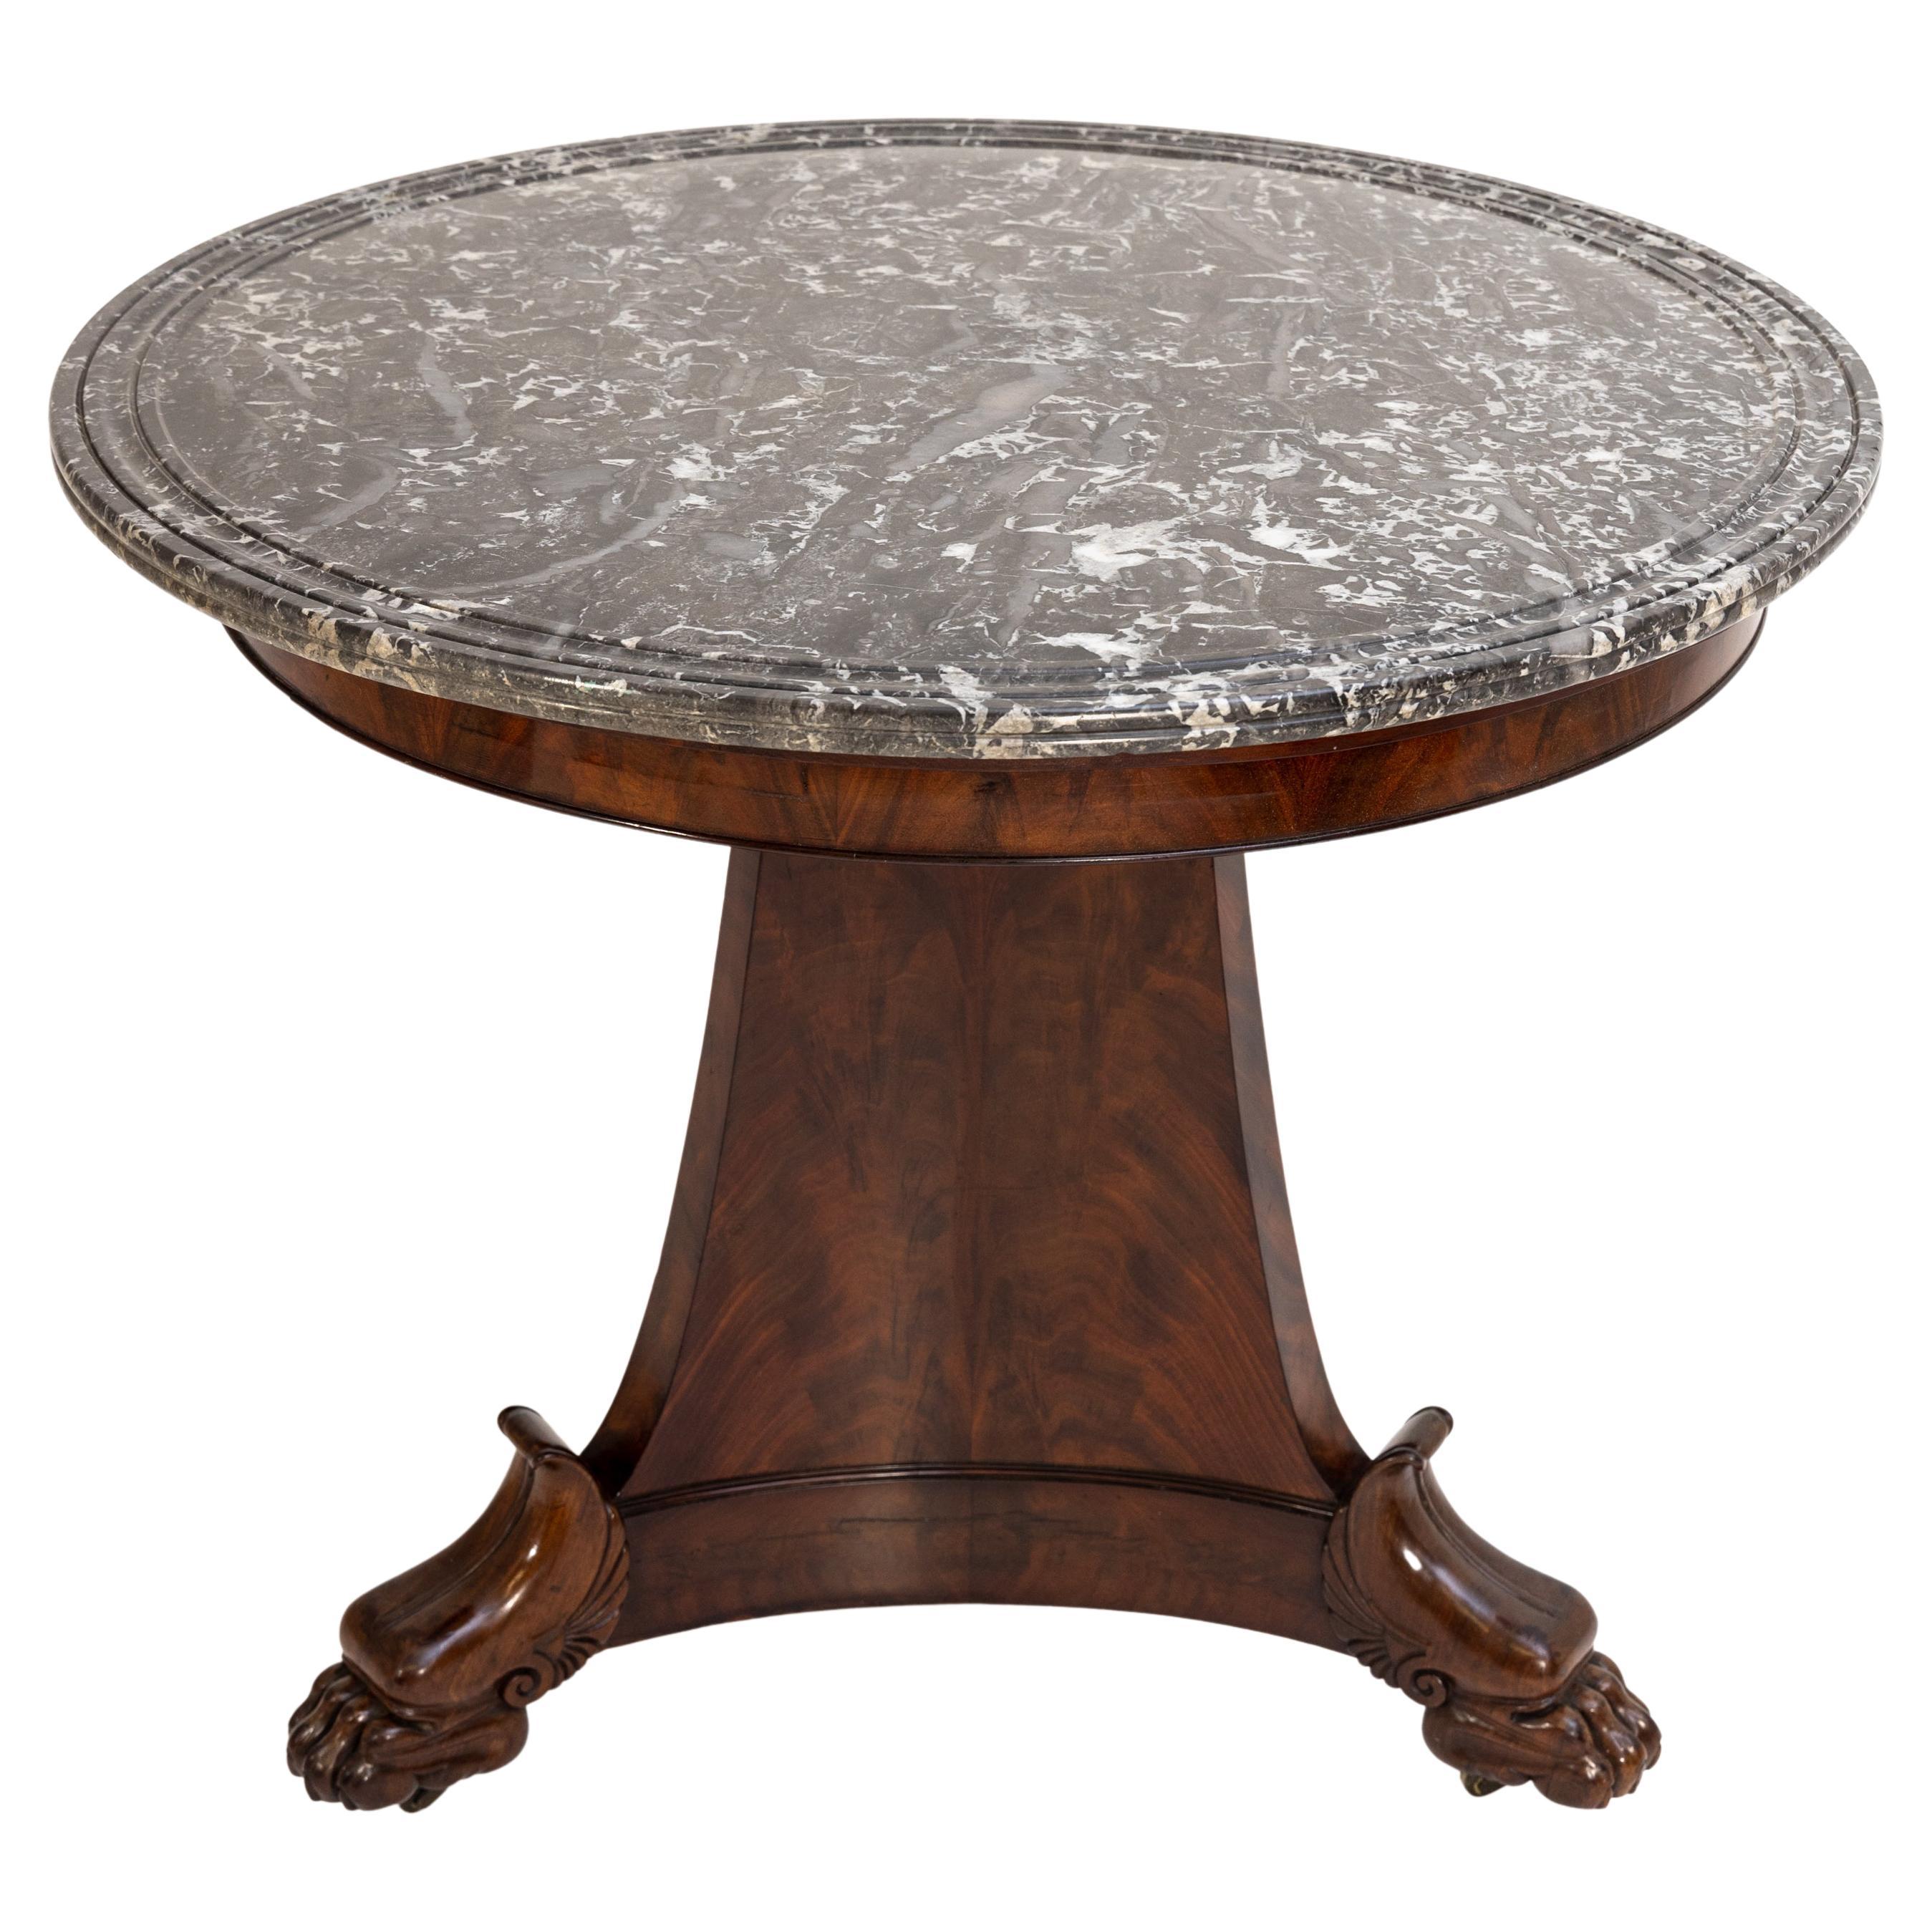 Dreibeiniger Gueridon mit grauer Marmorplatte und Tatzenfüßen. Der Tisch steht auf Messingrollen und ist mahagonifurniert.